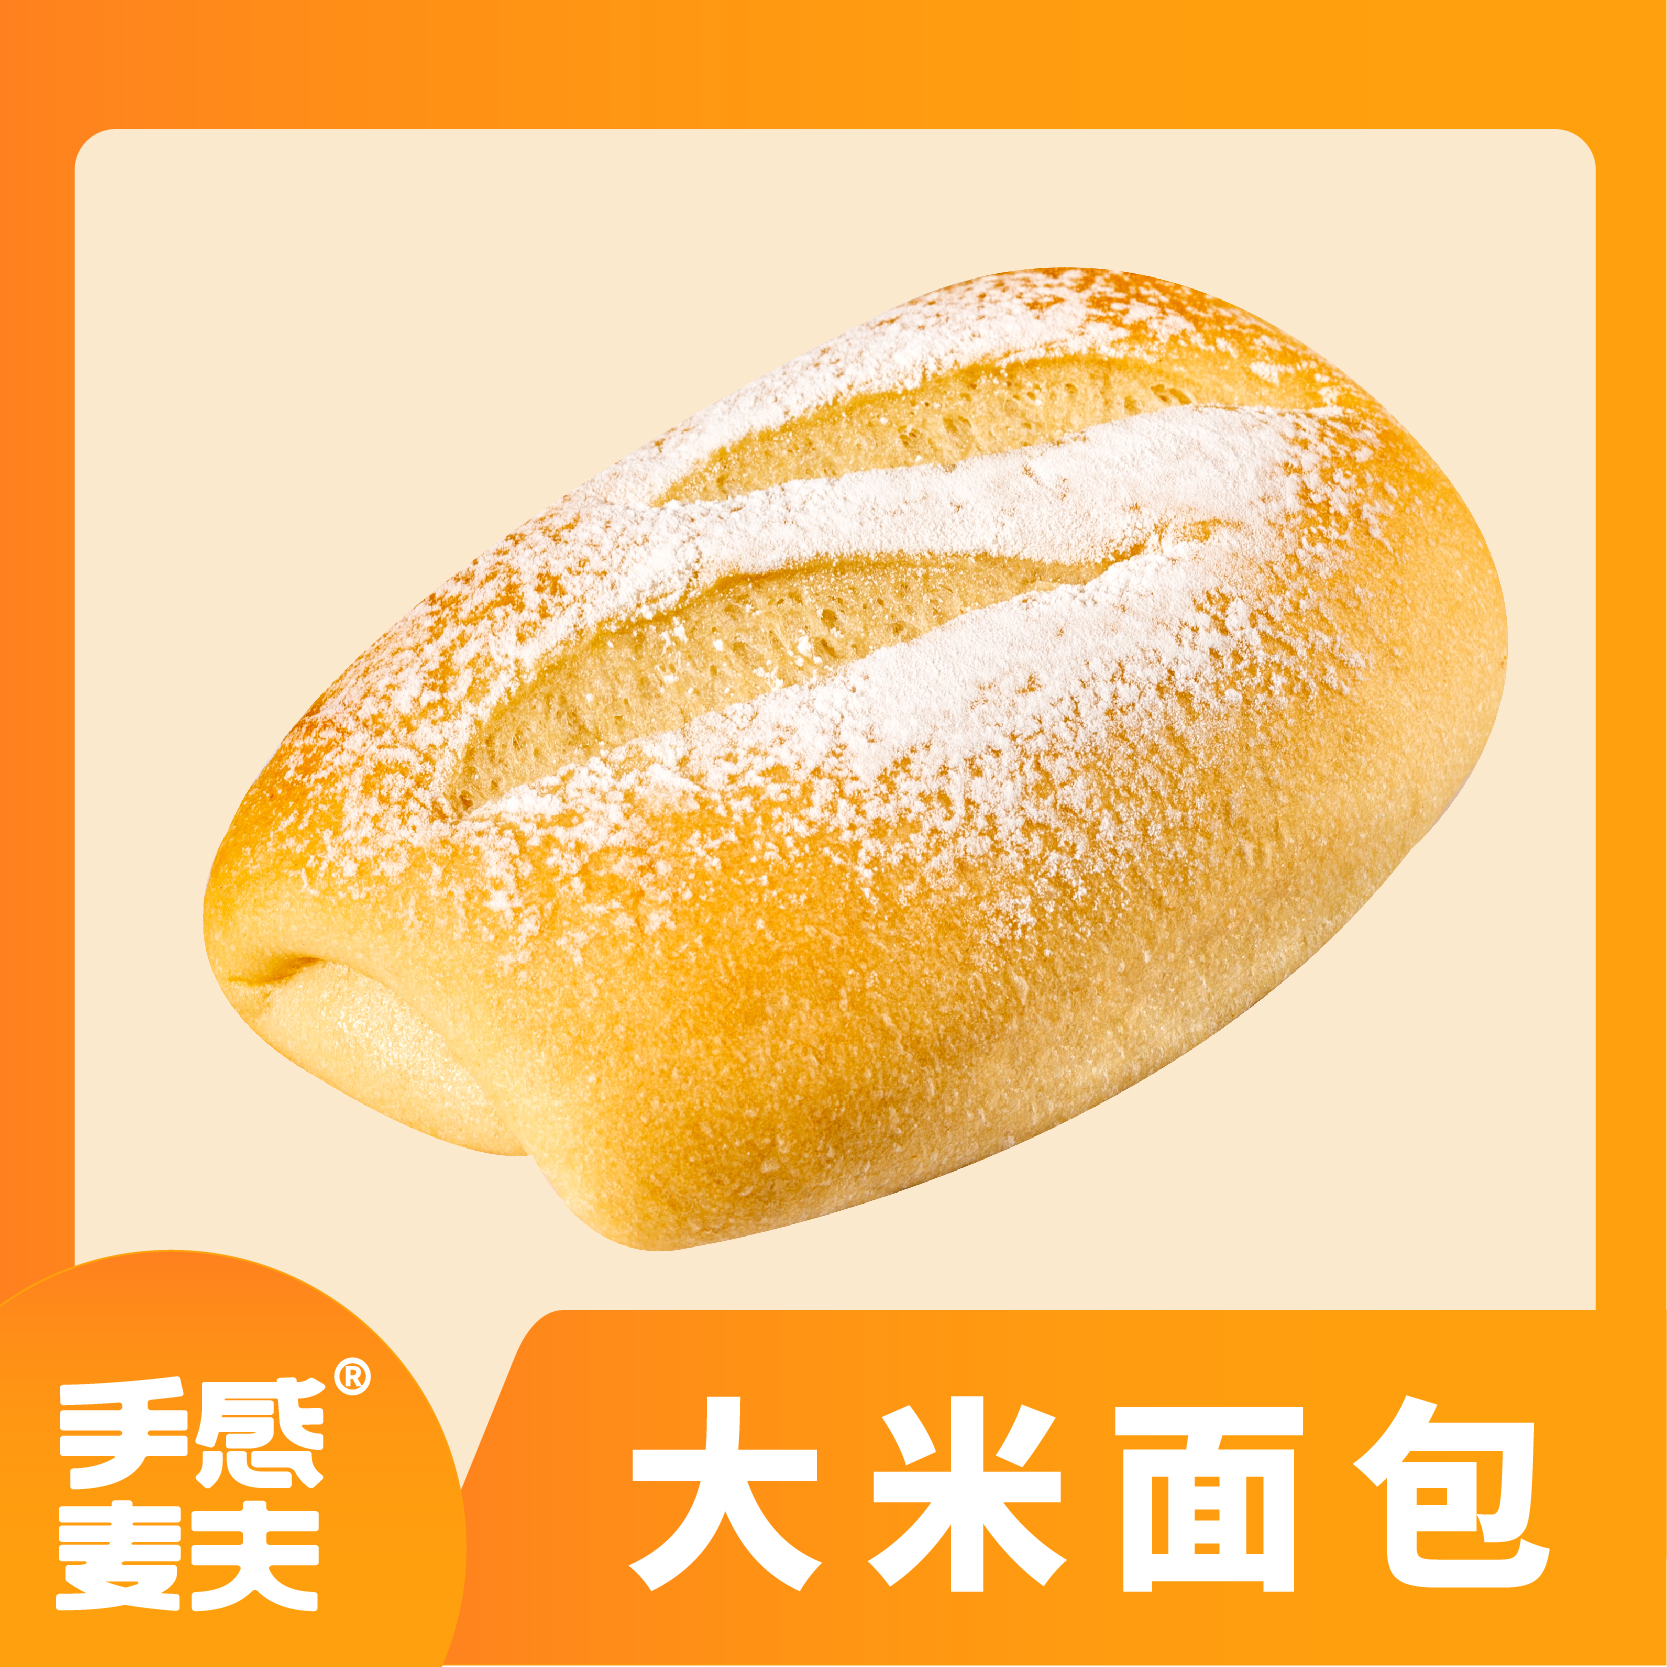 长沙手感麦夫传统手工面包软欧包大米面包柔软面包低脂面包